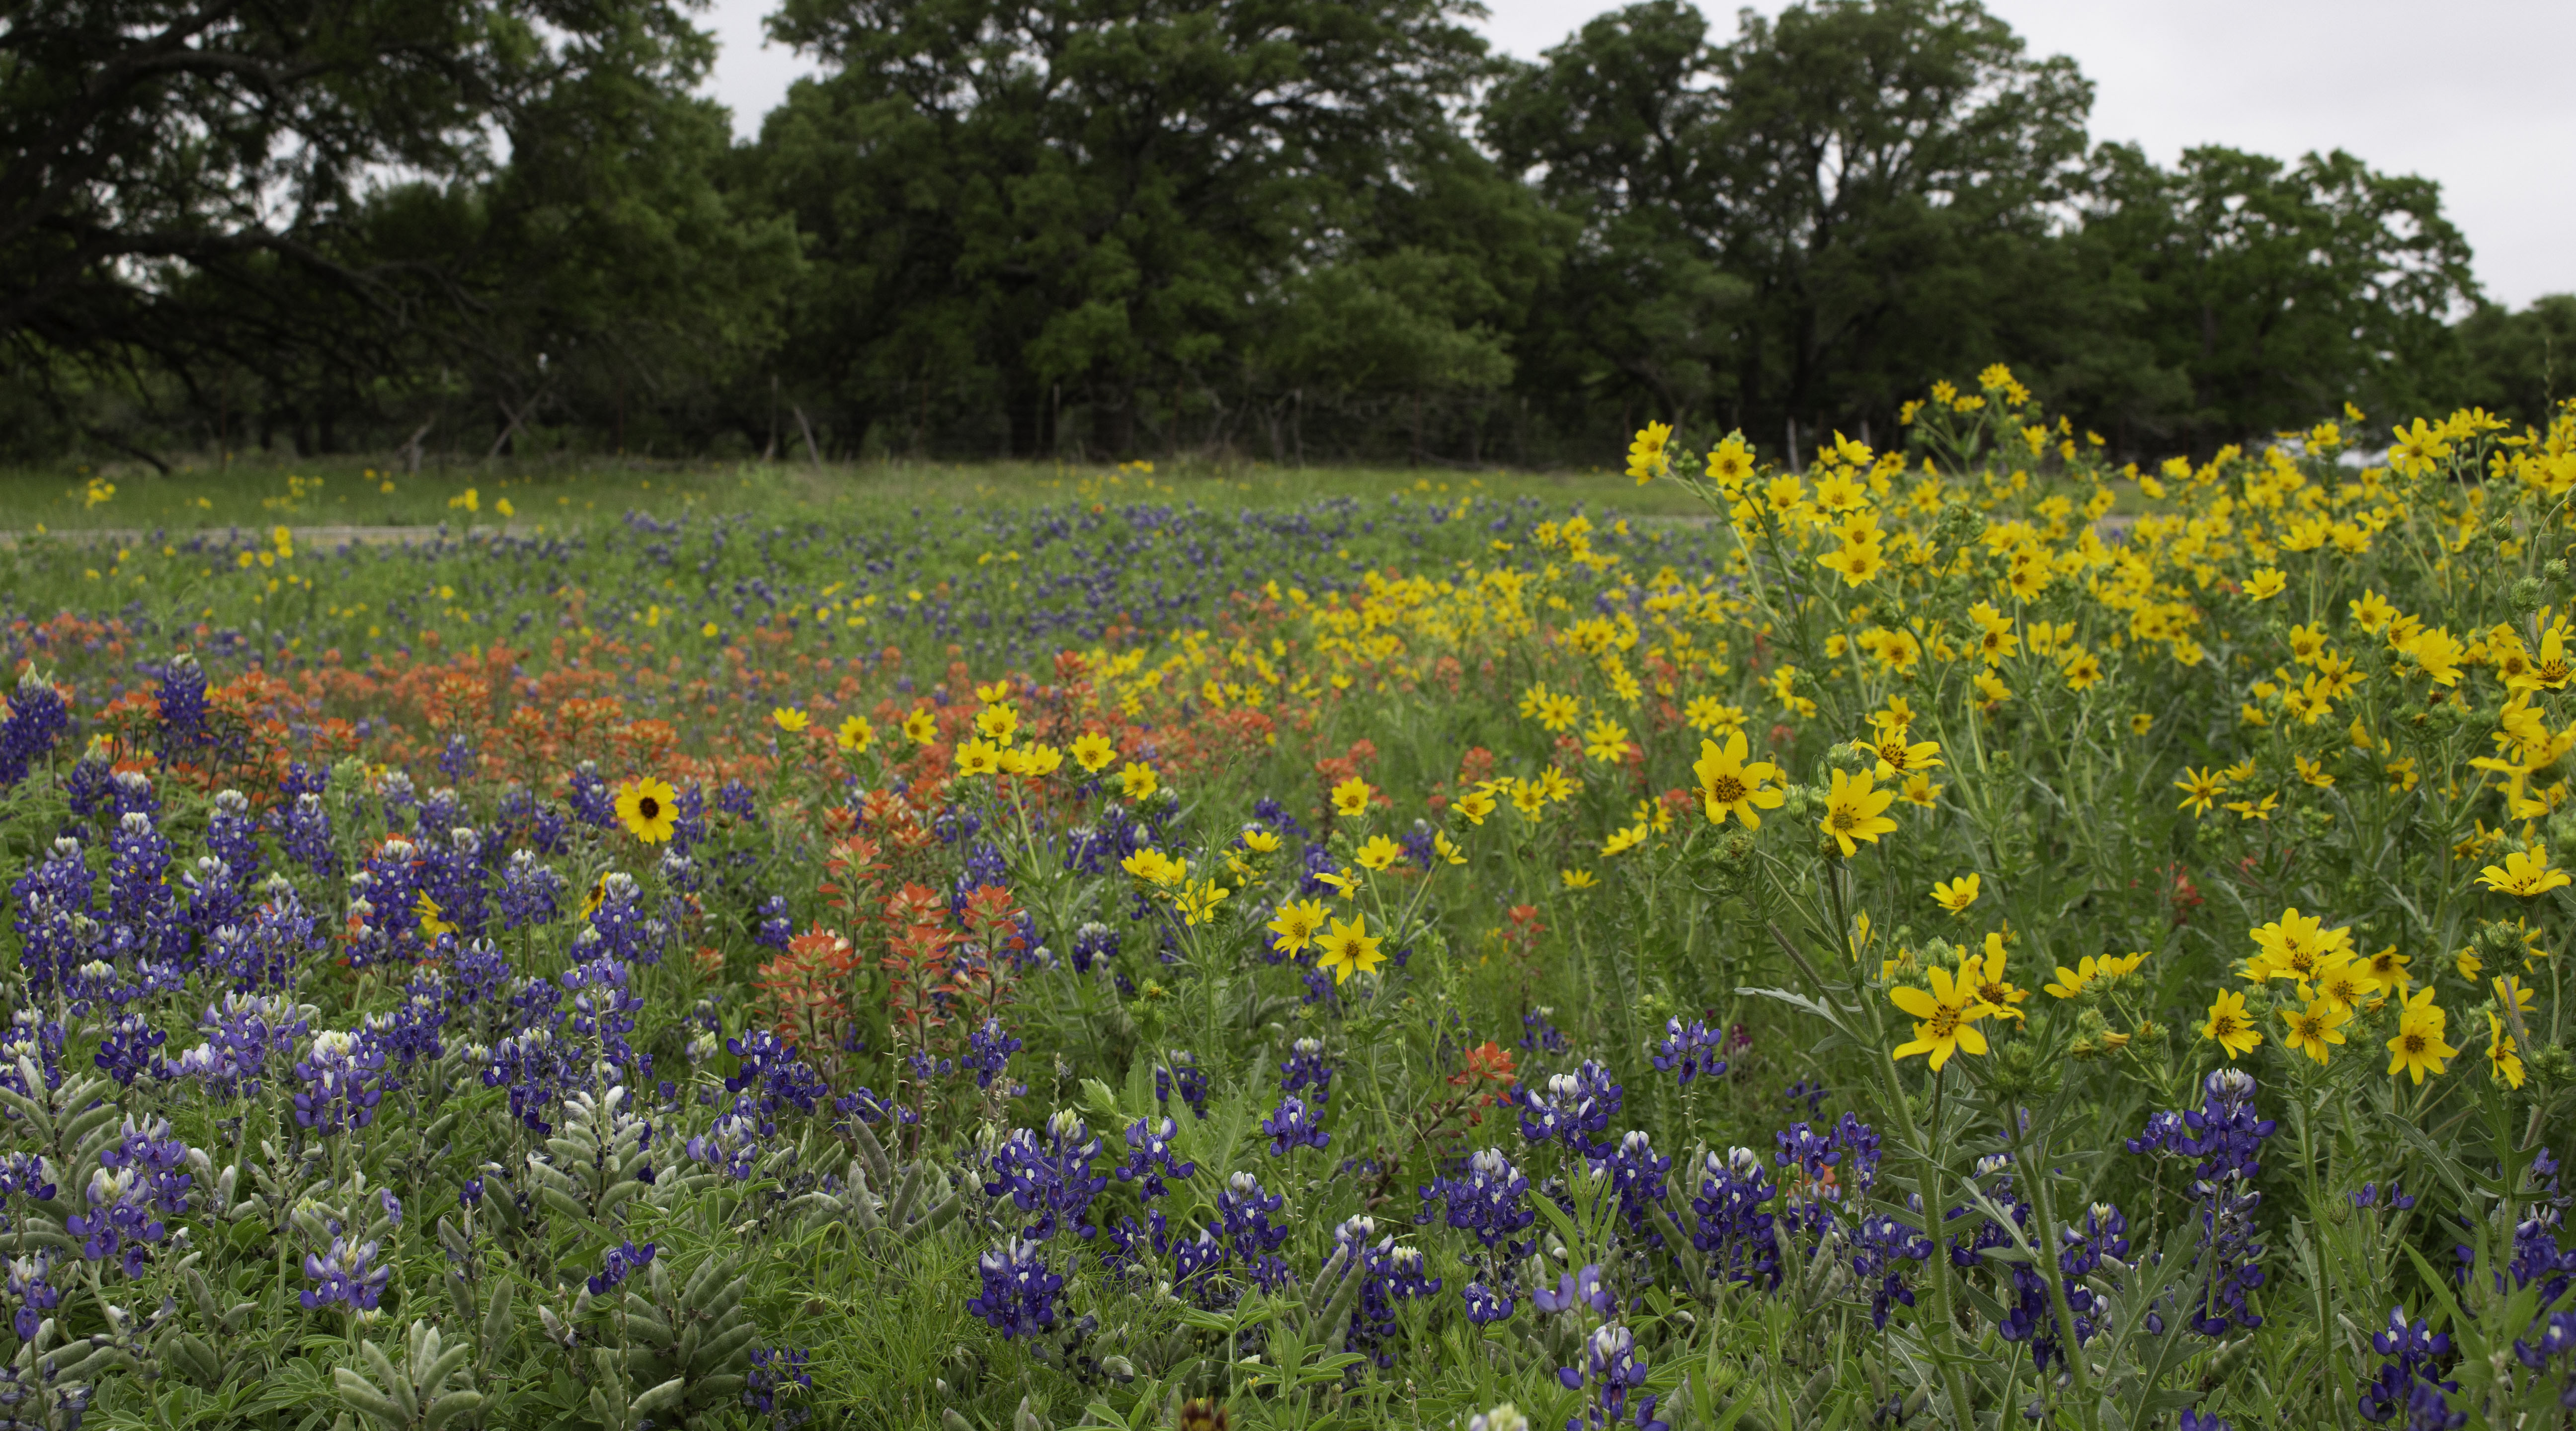 Texas Wildflowers April 2019